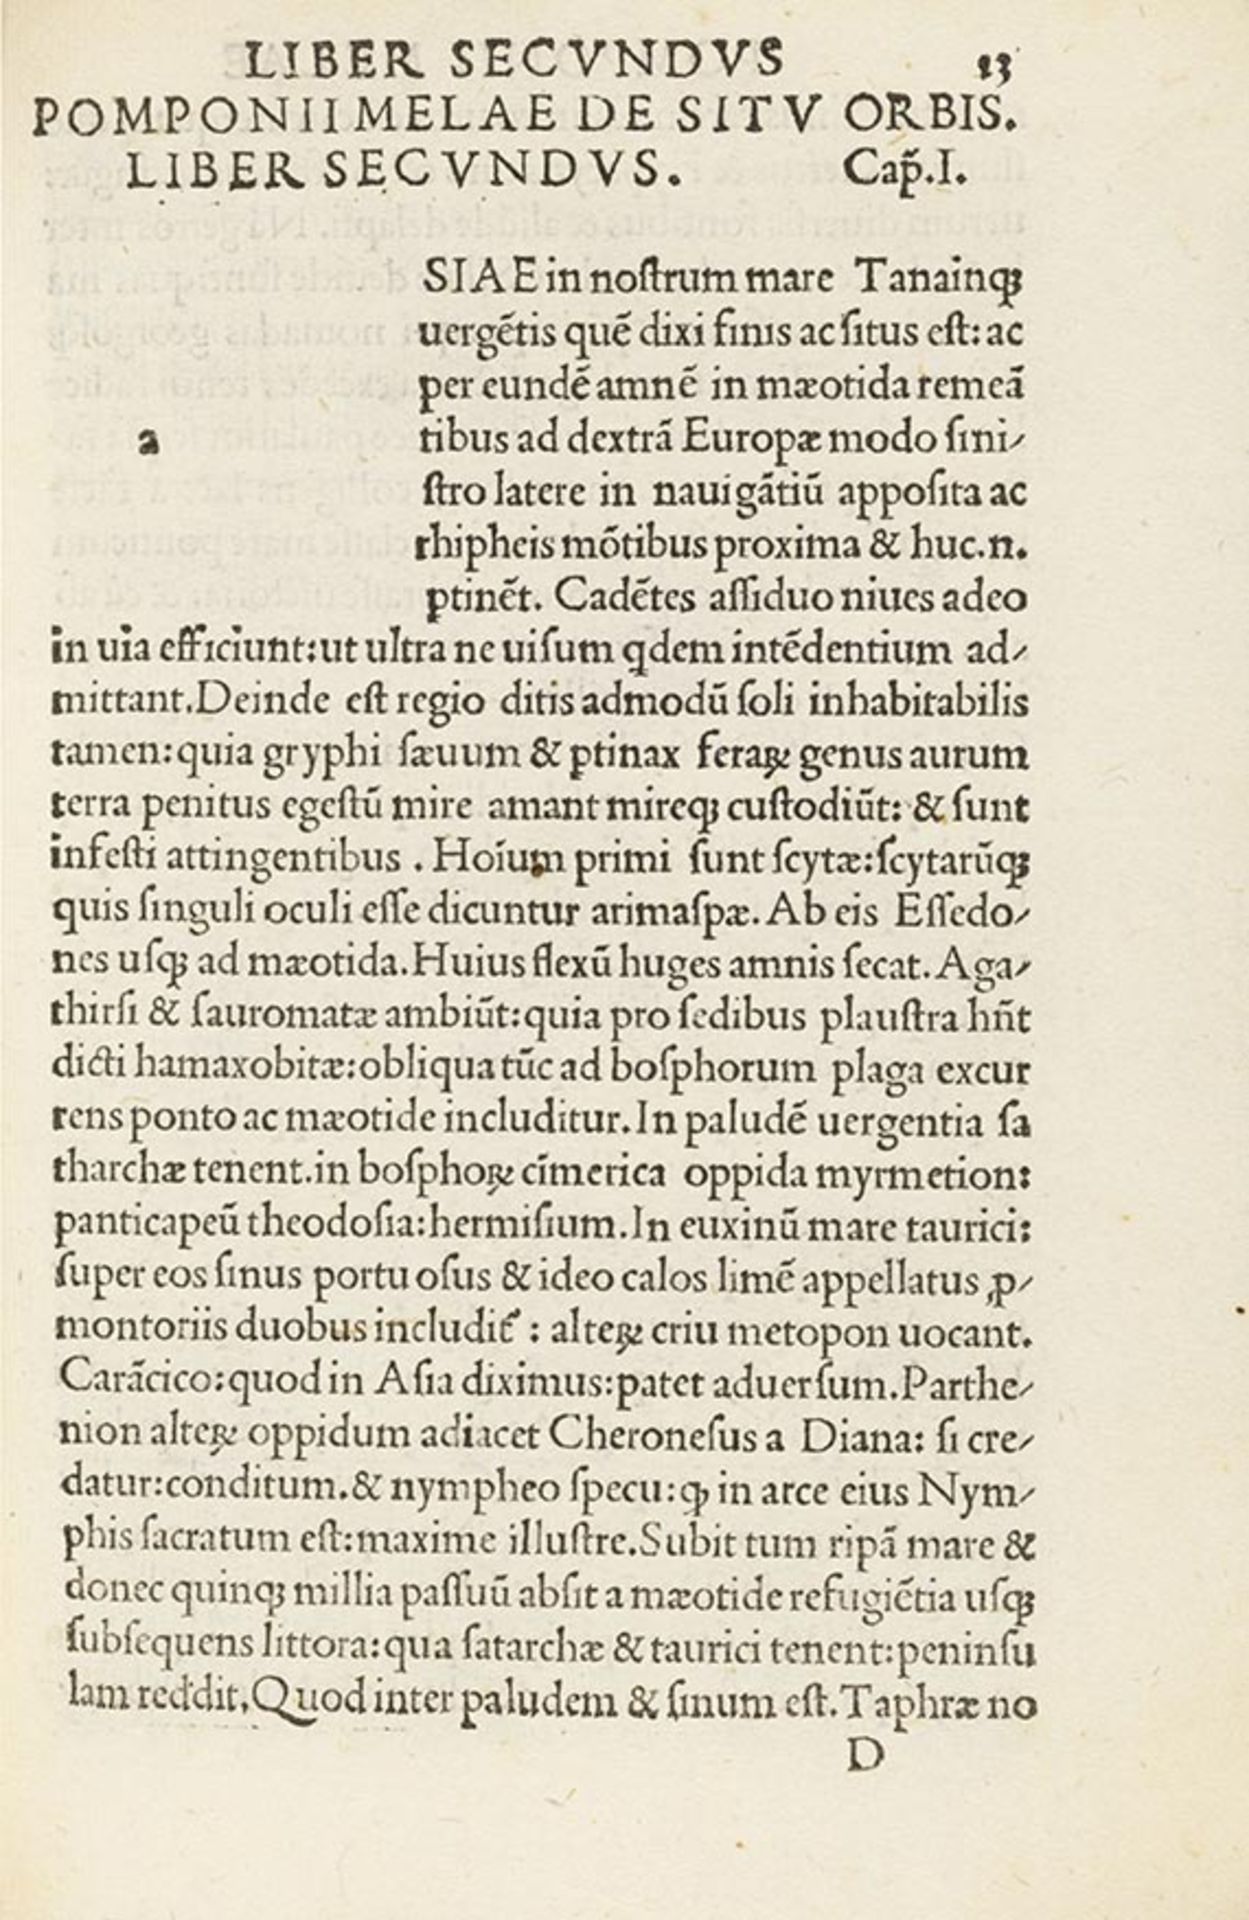 Pomponius Mela, [De Situ orbis ab Hermolao Barbaro fideliter emendatus]. Pesaro.